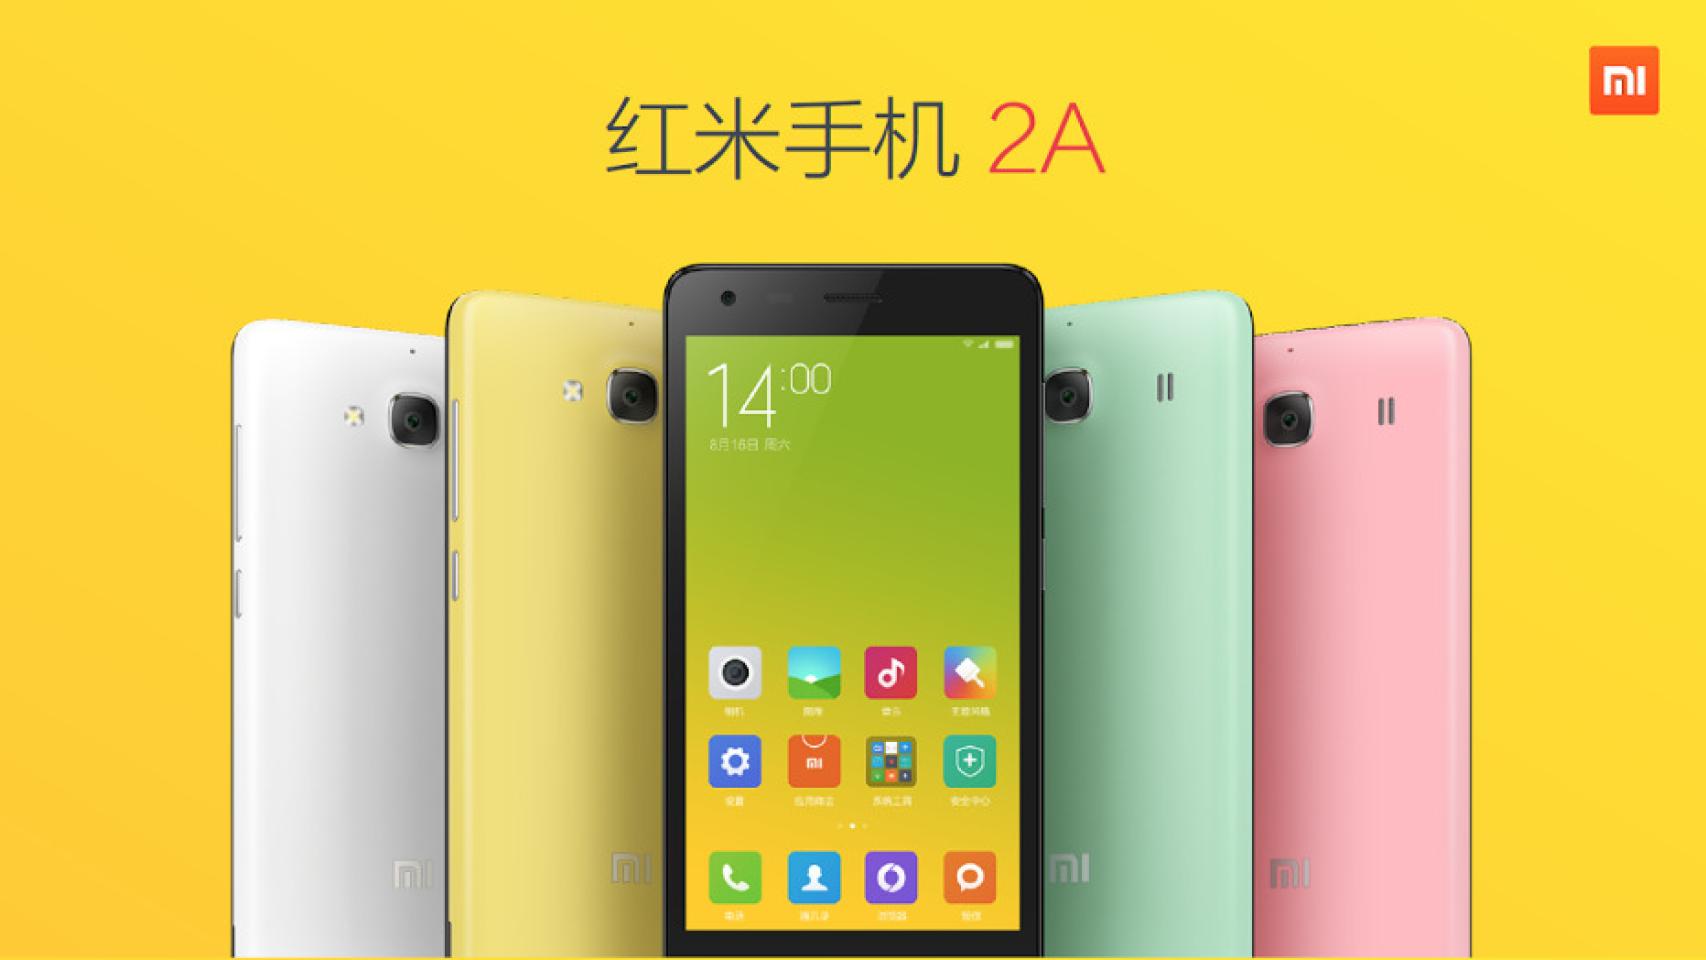 Nuevo Xiaomi Redmi 2A con procesador Leadcore desde unos 75€